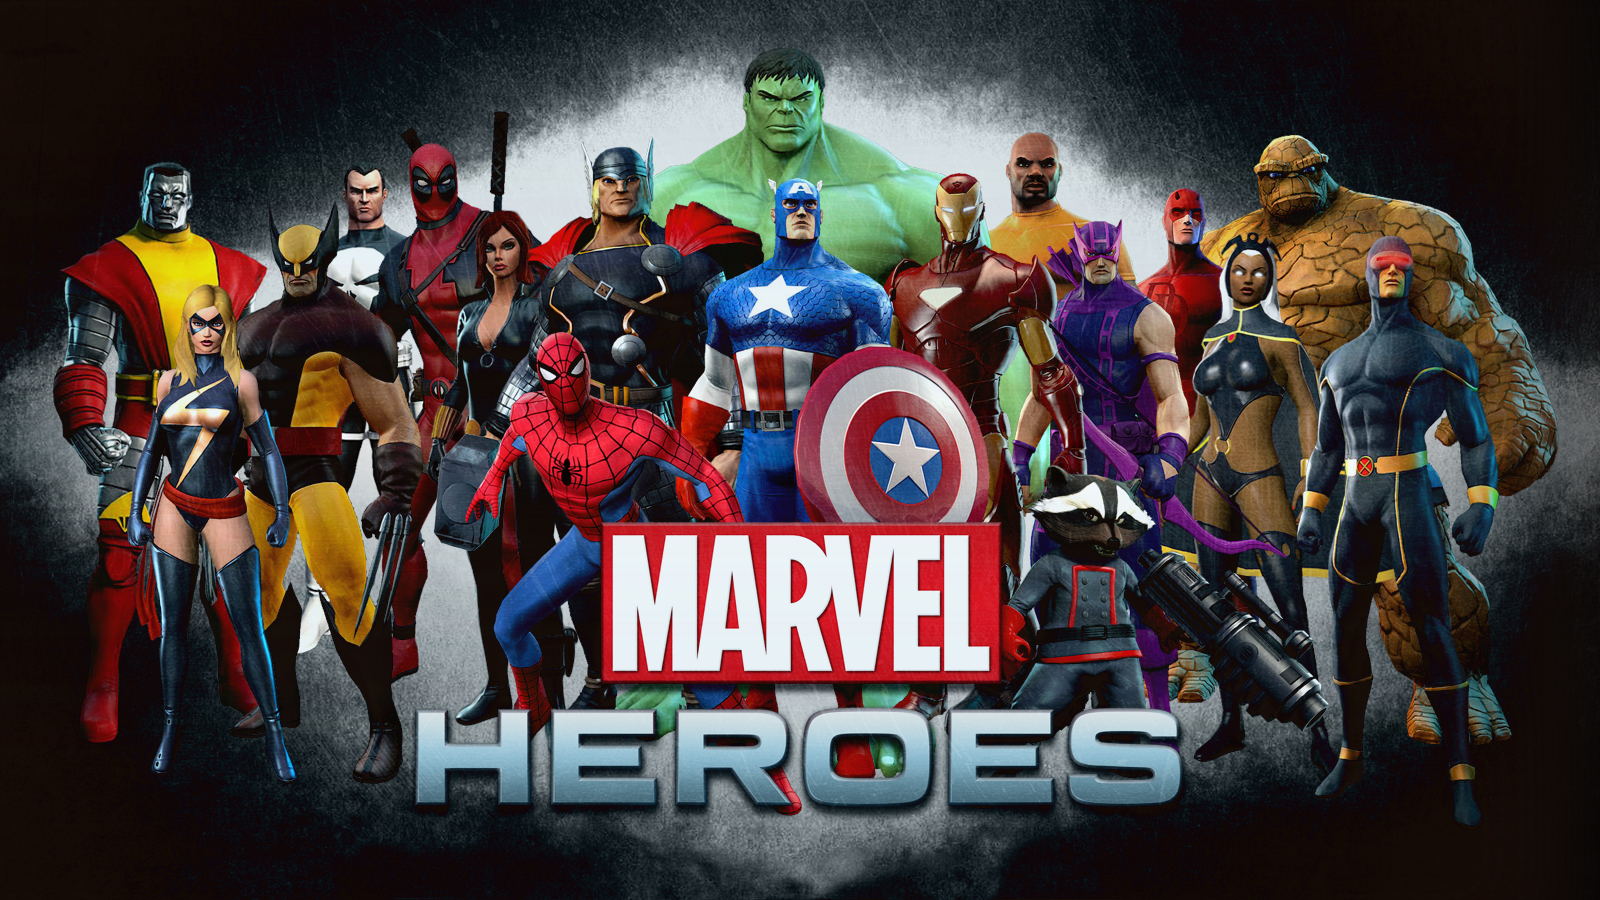 Marvel Heroes Video Game